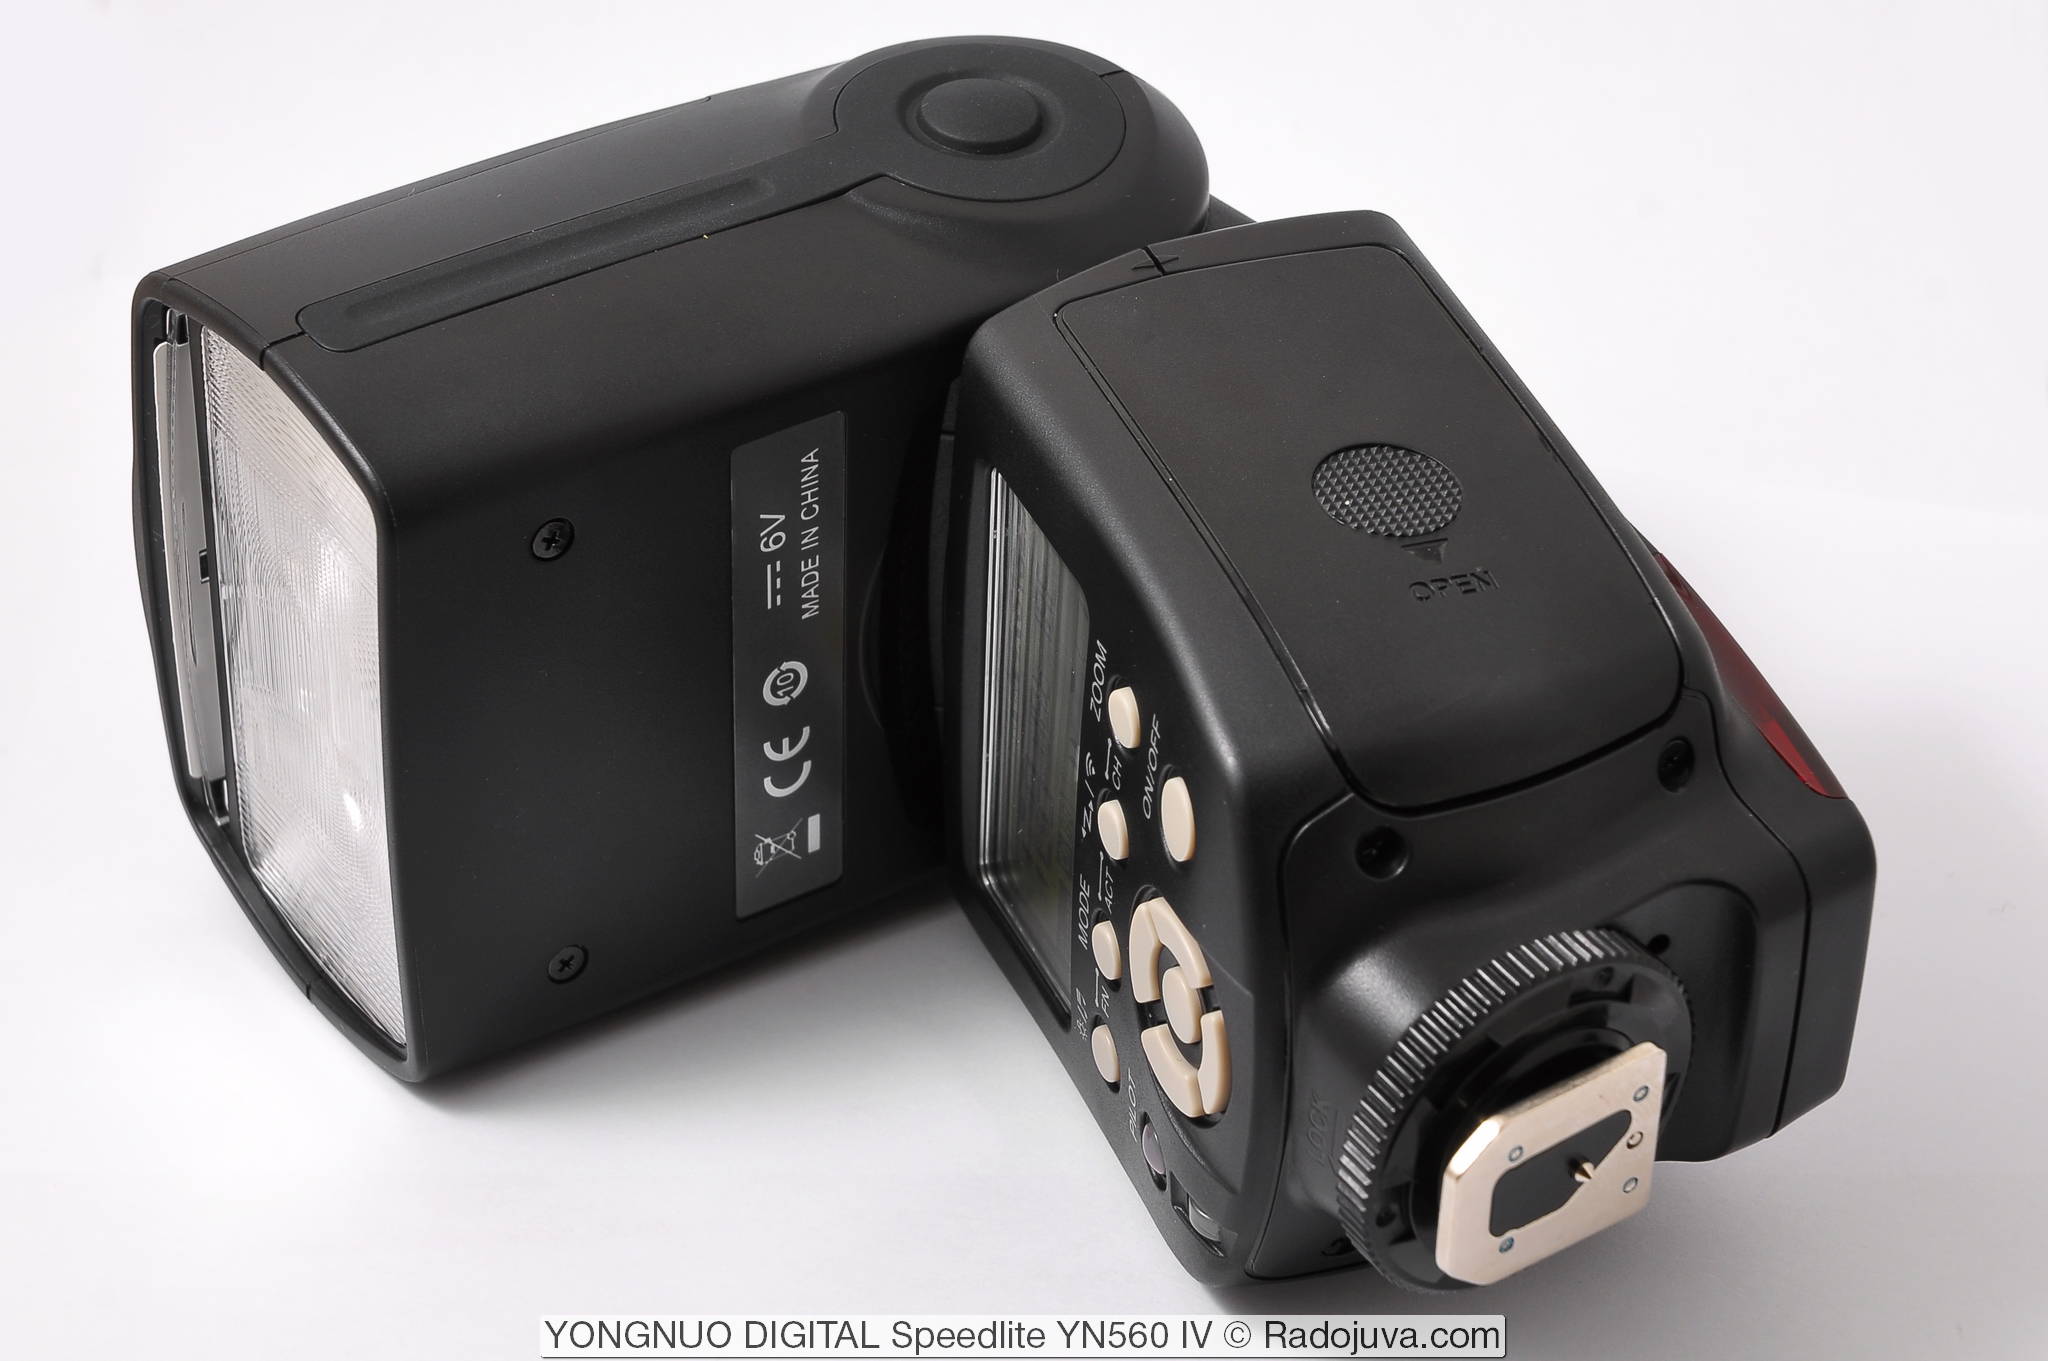 YONGNUO FLASH  YONGNUO SPEEDLITE YN560 II for all types of cameras. 